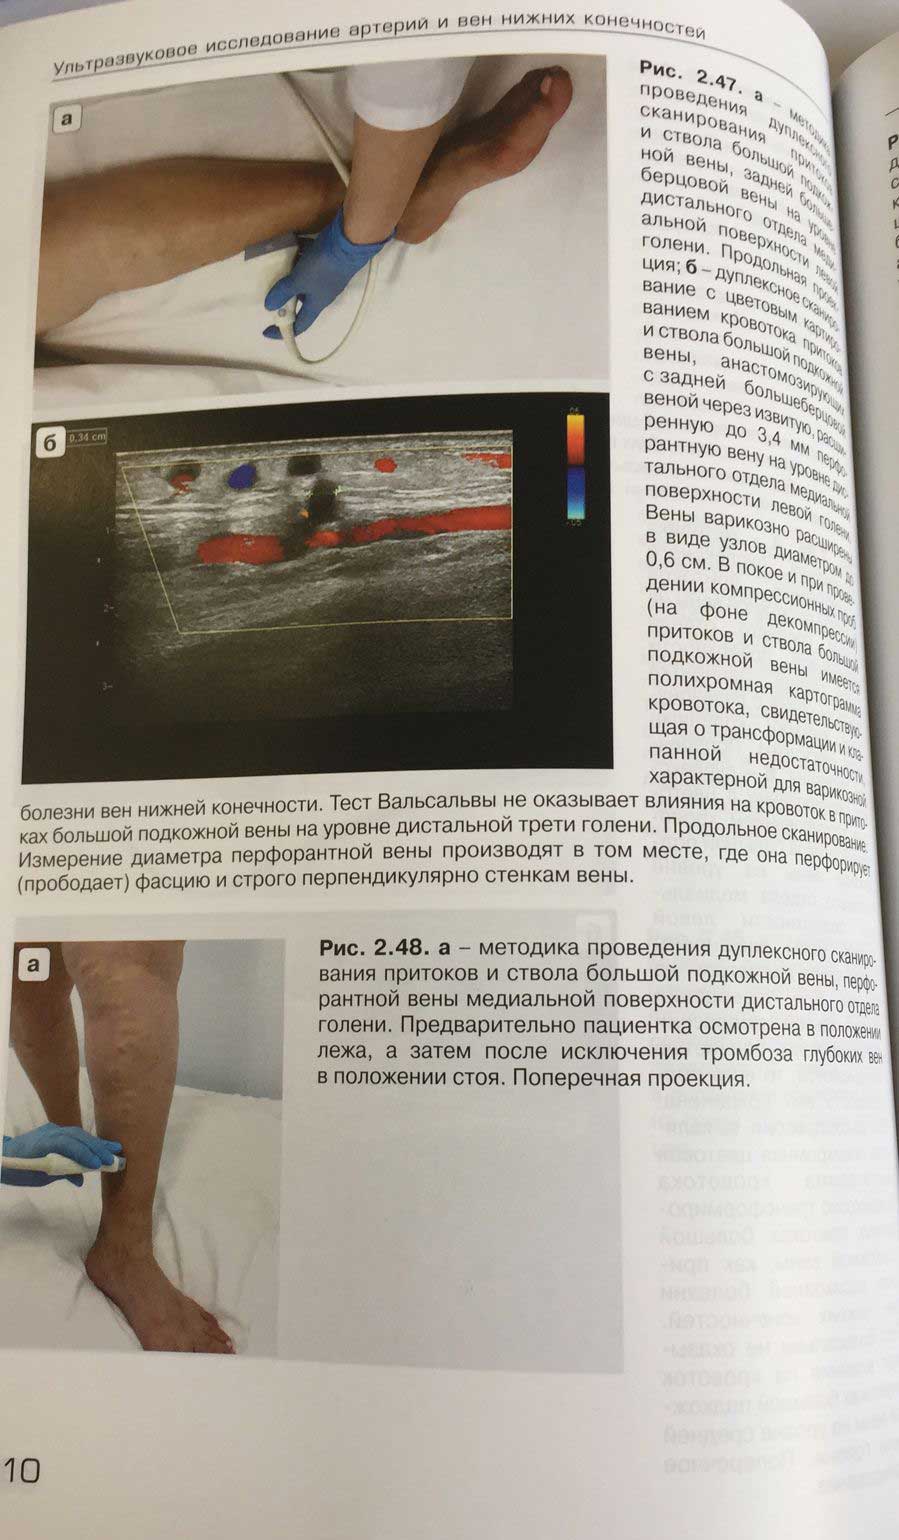 Пример страницы из книги "Ультразвуковое исследование при заболеваниях артерий и вен нижних конечностей"